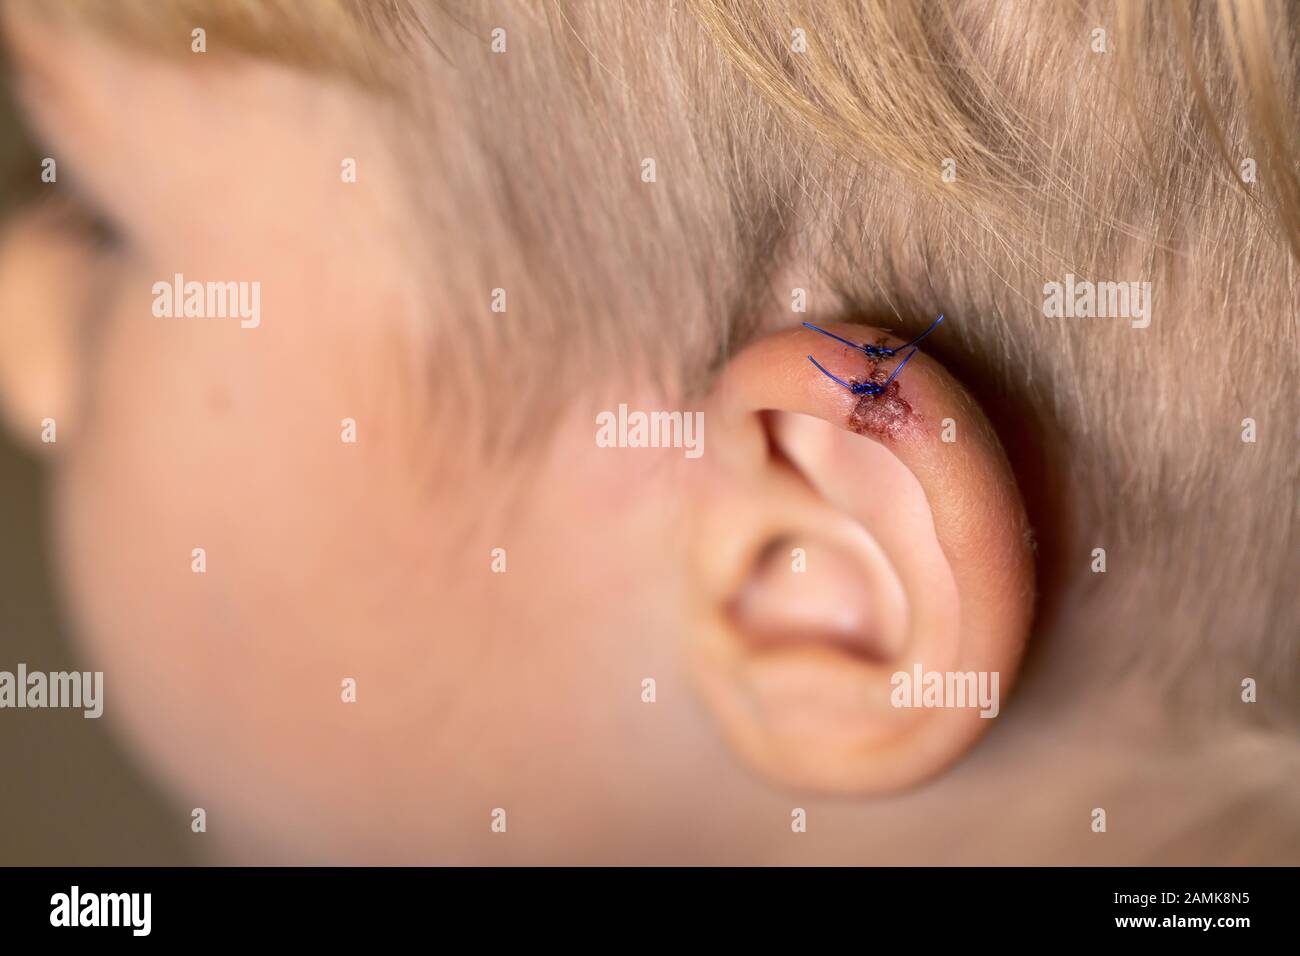 Incisione all'orecchio Immagini e Fotos Stock - Alamy